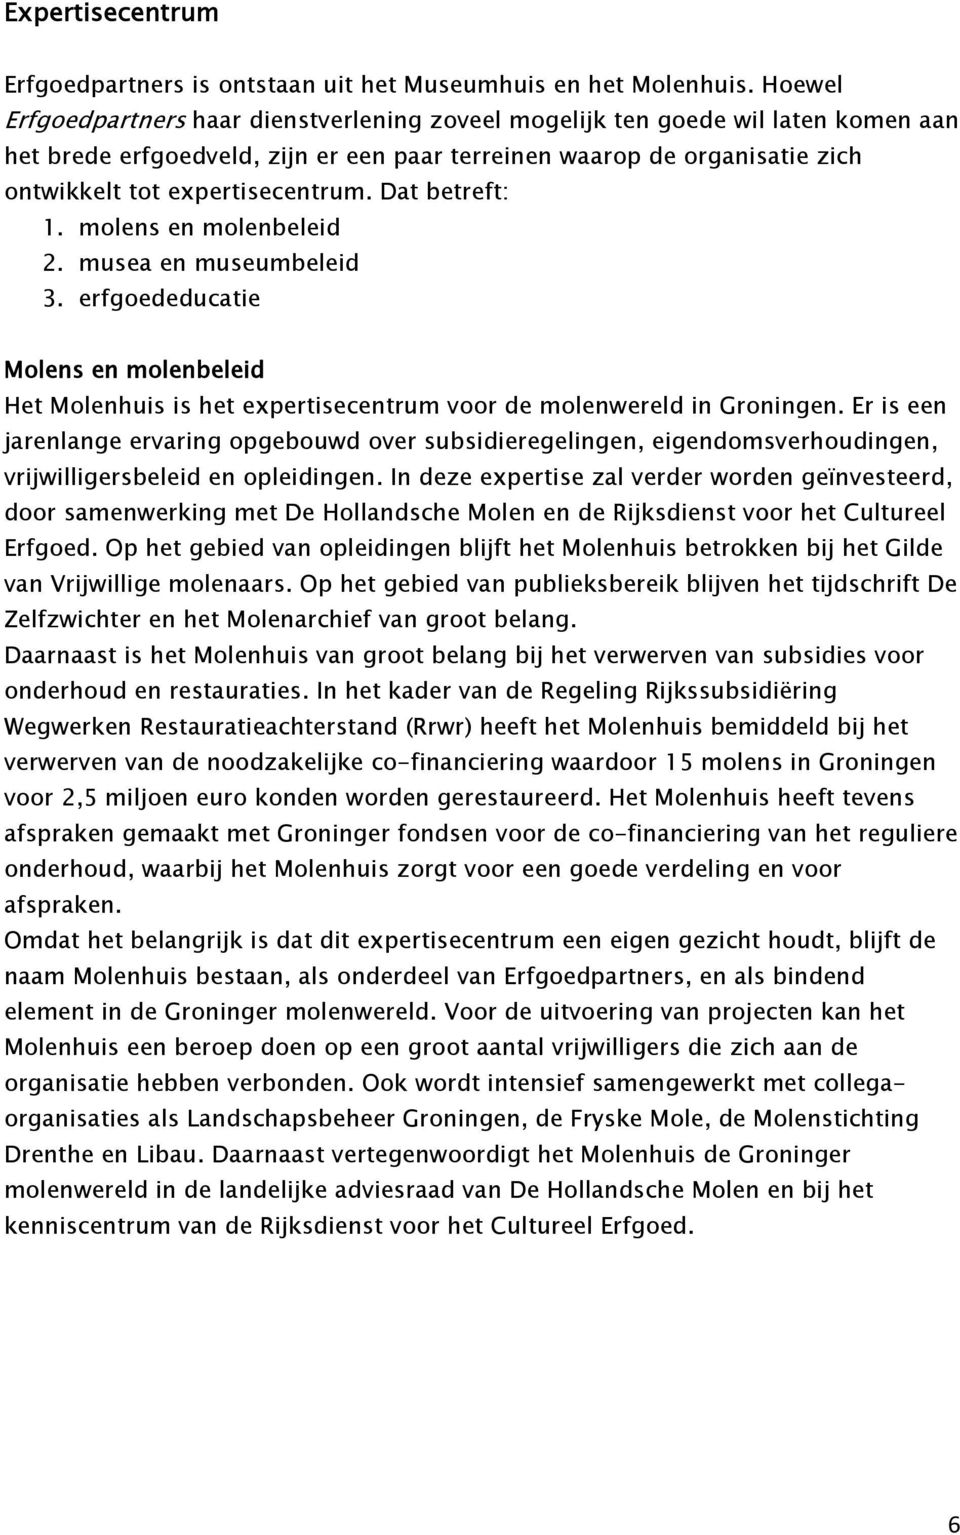 Dat betreft: 1. molens en molenbeleid 2. musea en museumbeleid 3. erfgoededucatie Molens en molenbeleid Het Molenhuis is het expertisecentrum voor de molenwereld in Groningen.